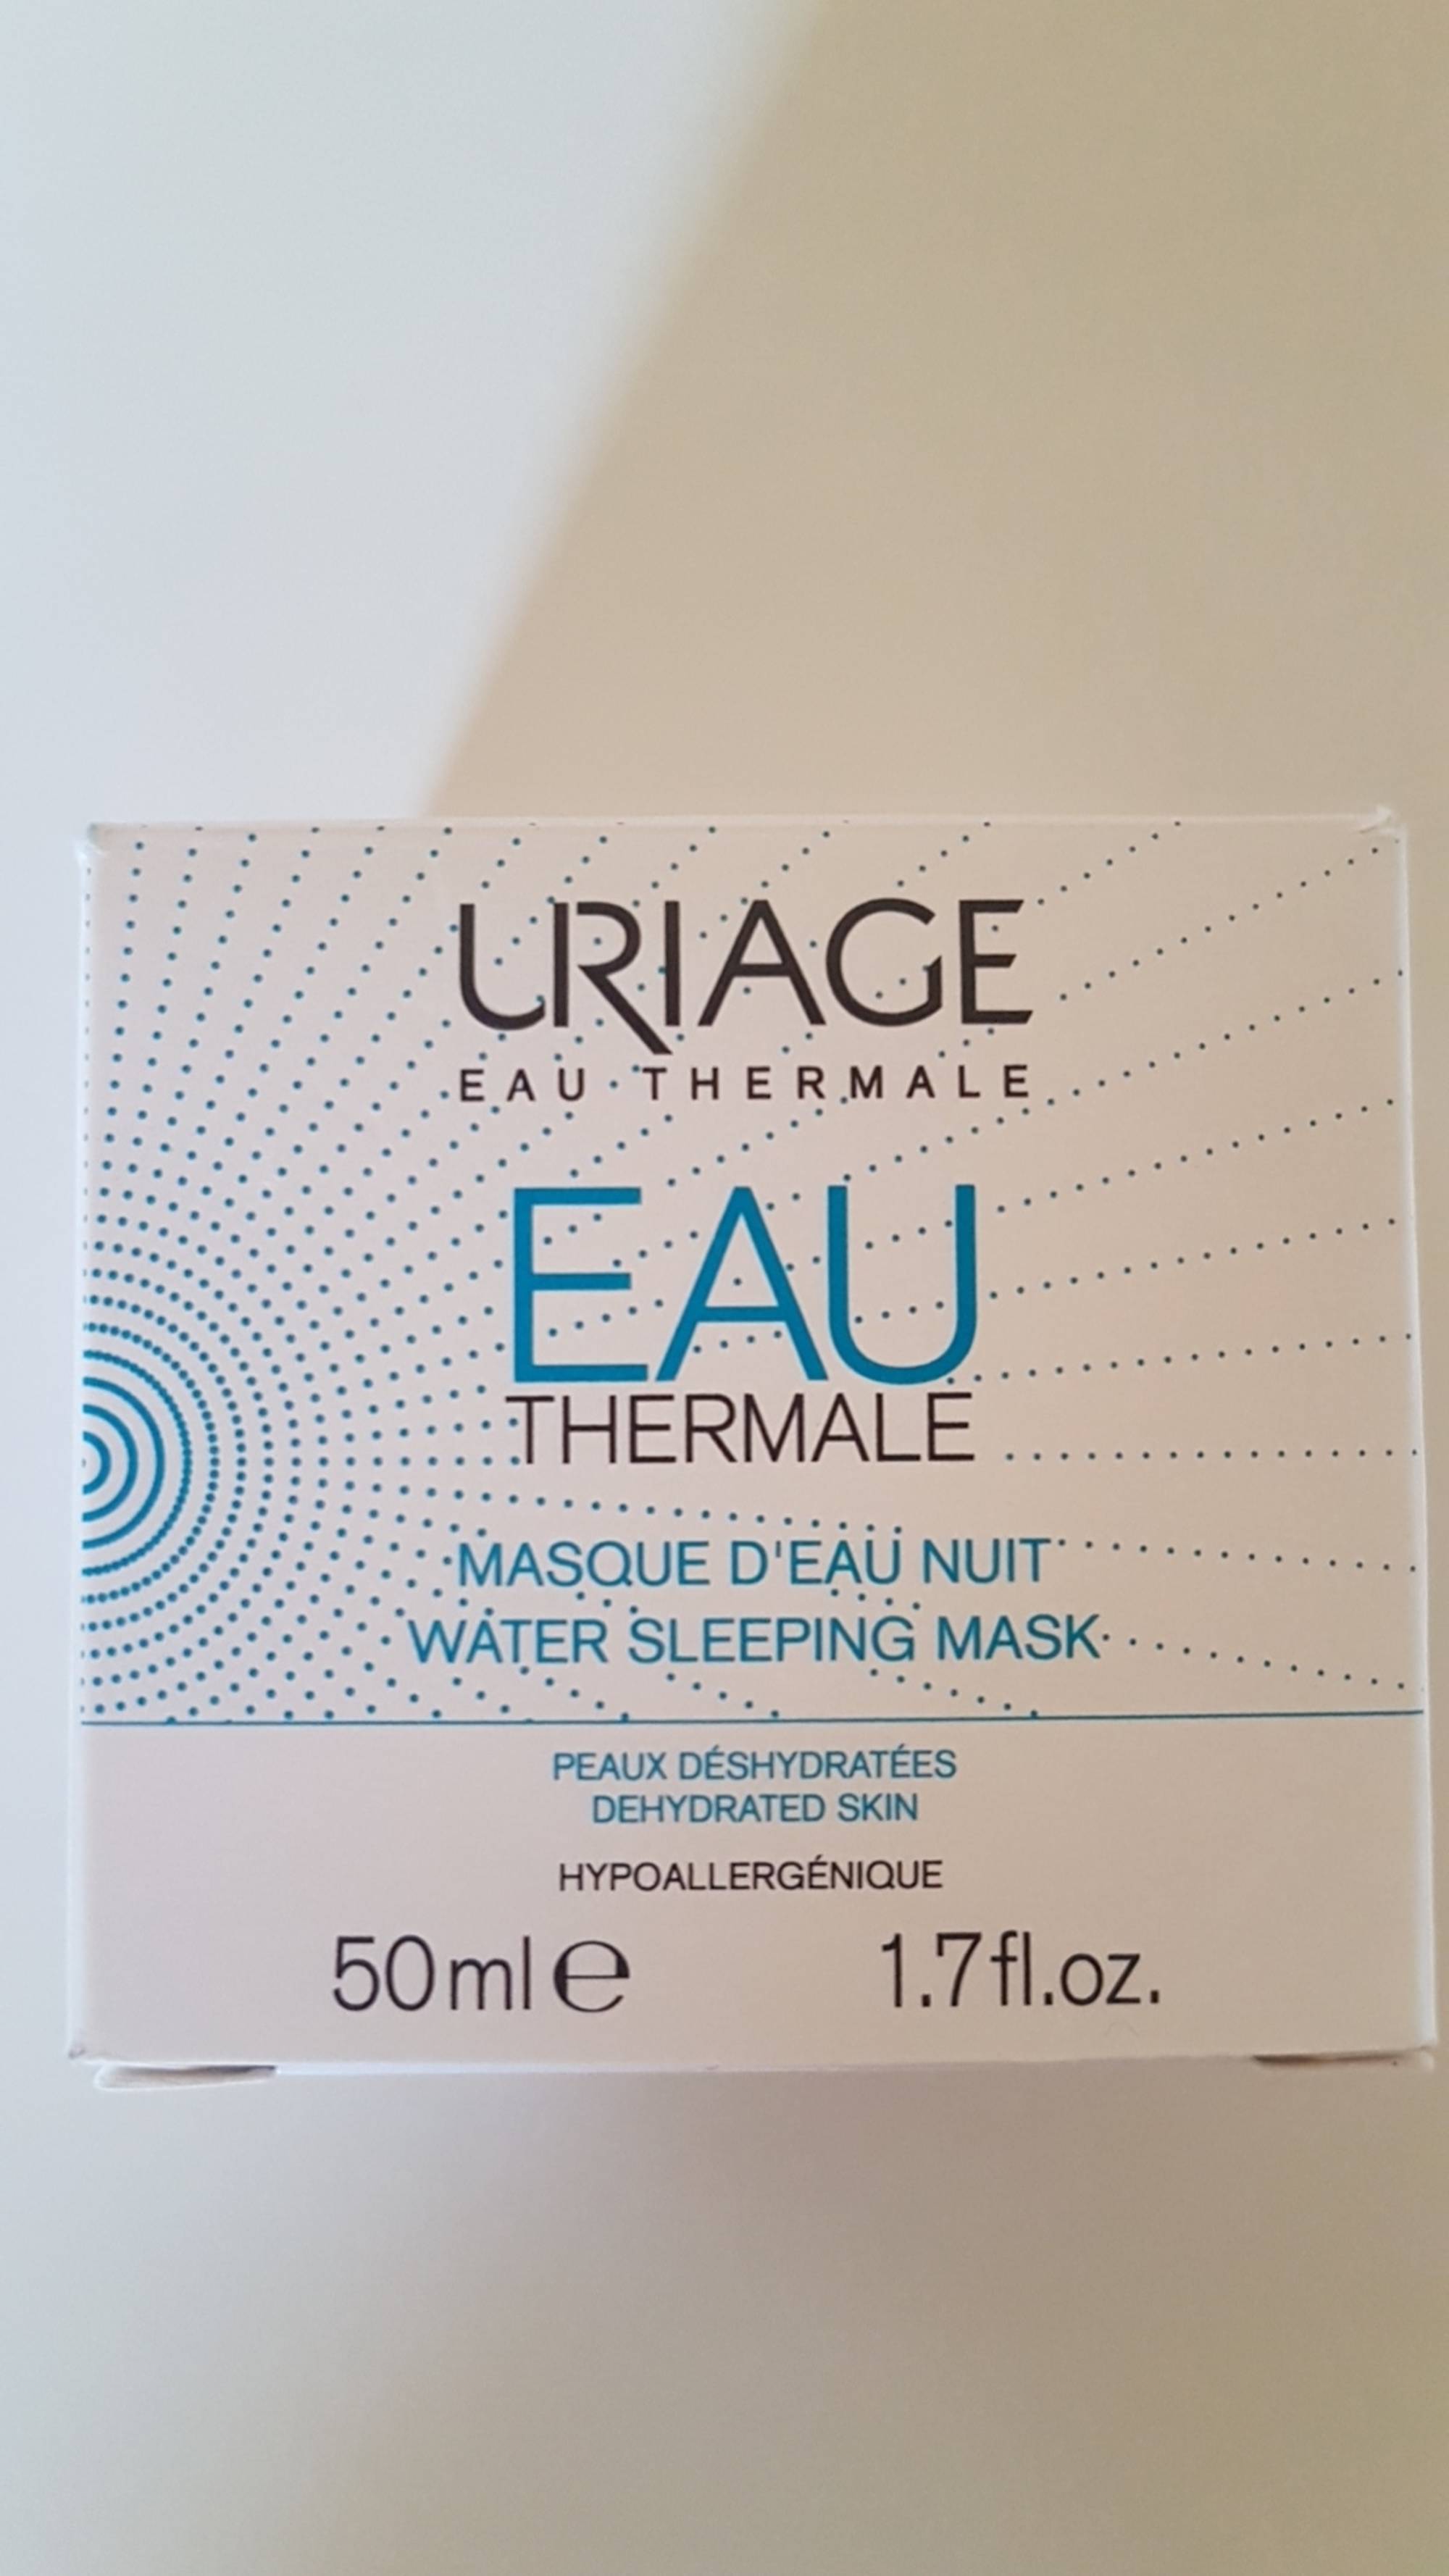 URIAGE - Eau thermale - Masque d'eau nuit